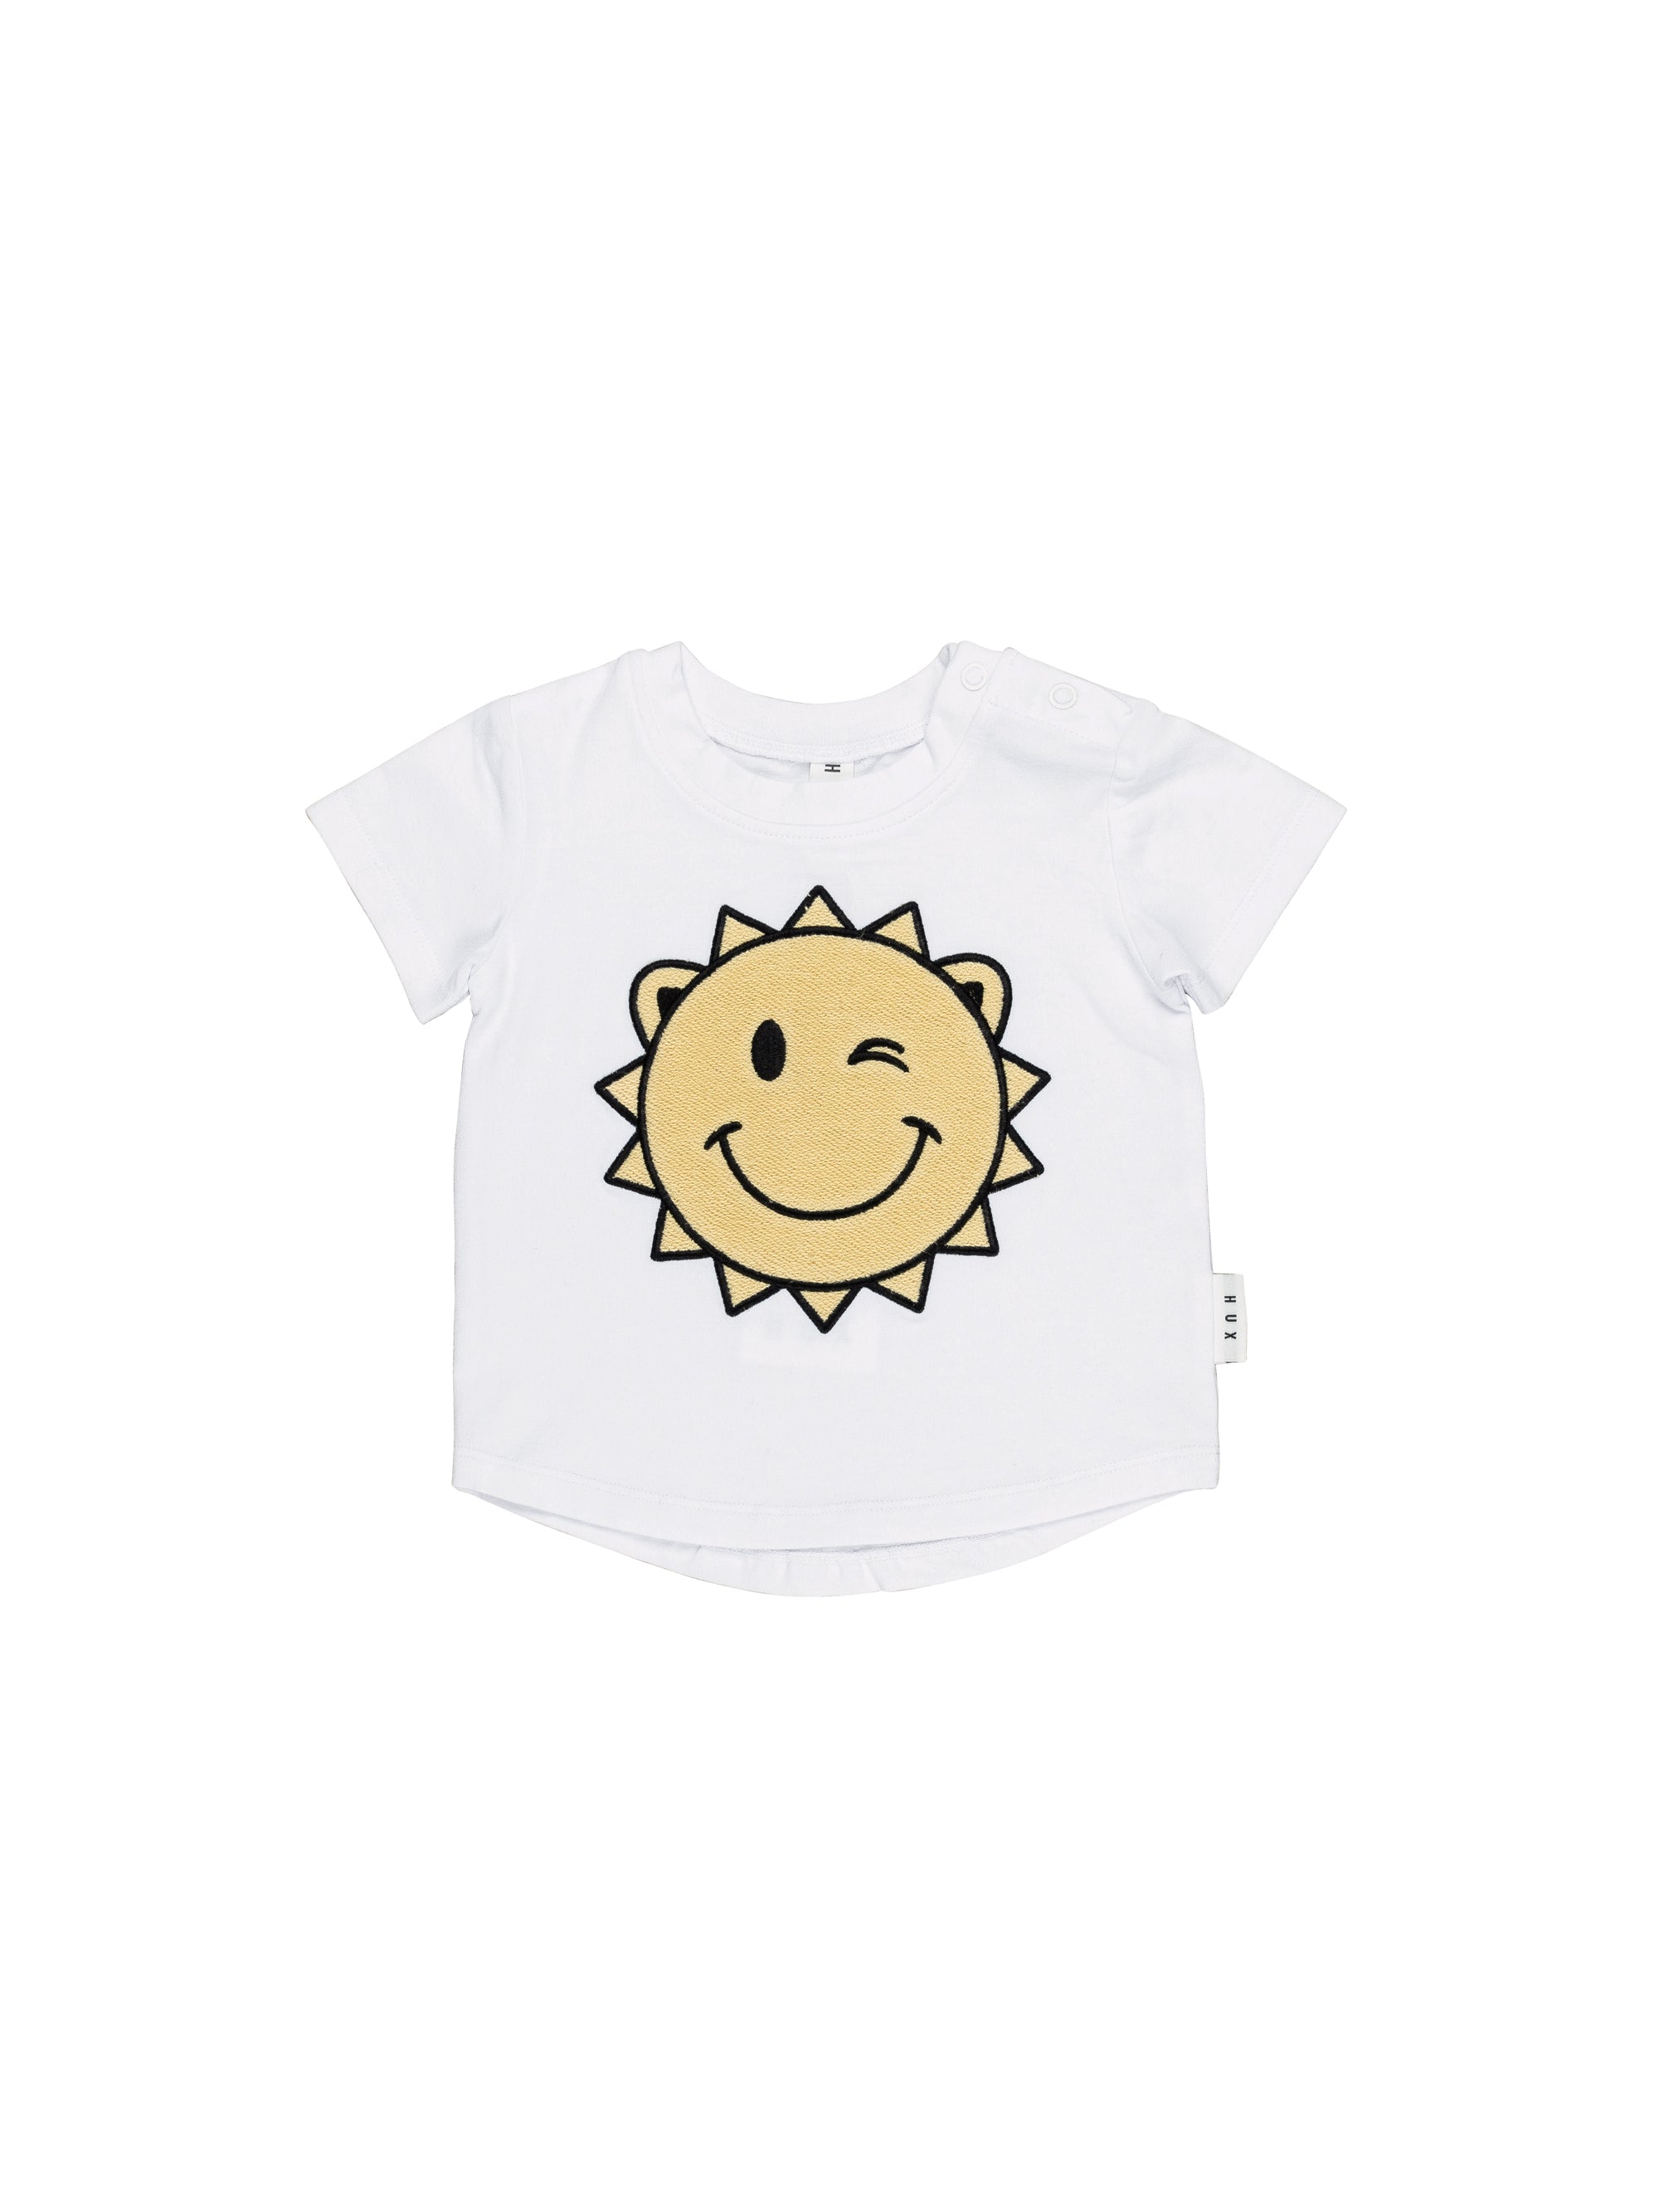 Huxbaby - Sunny Bear T-Shirt